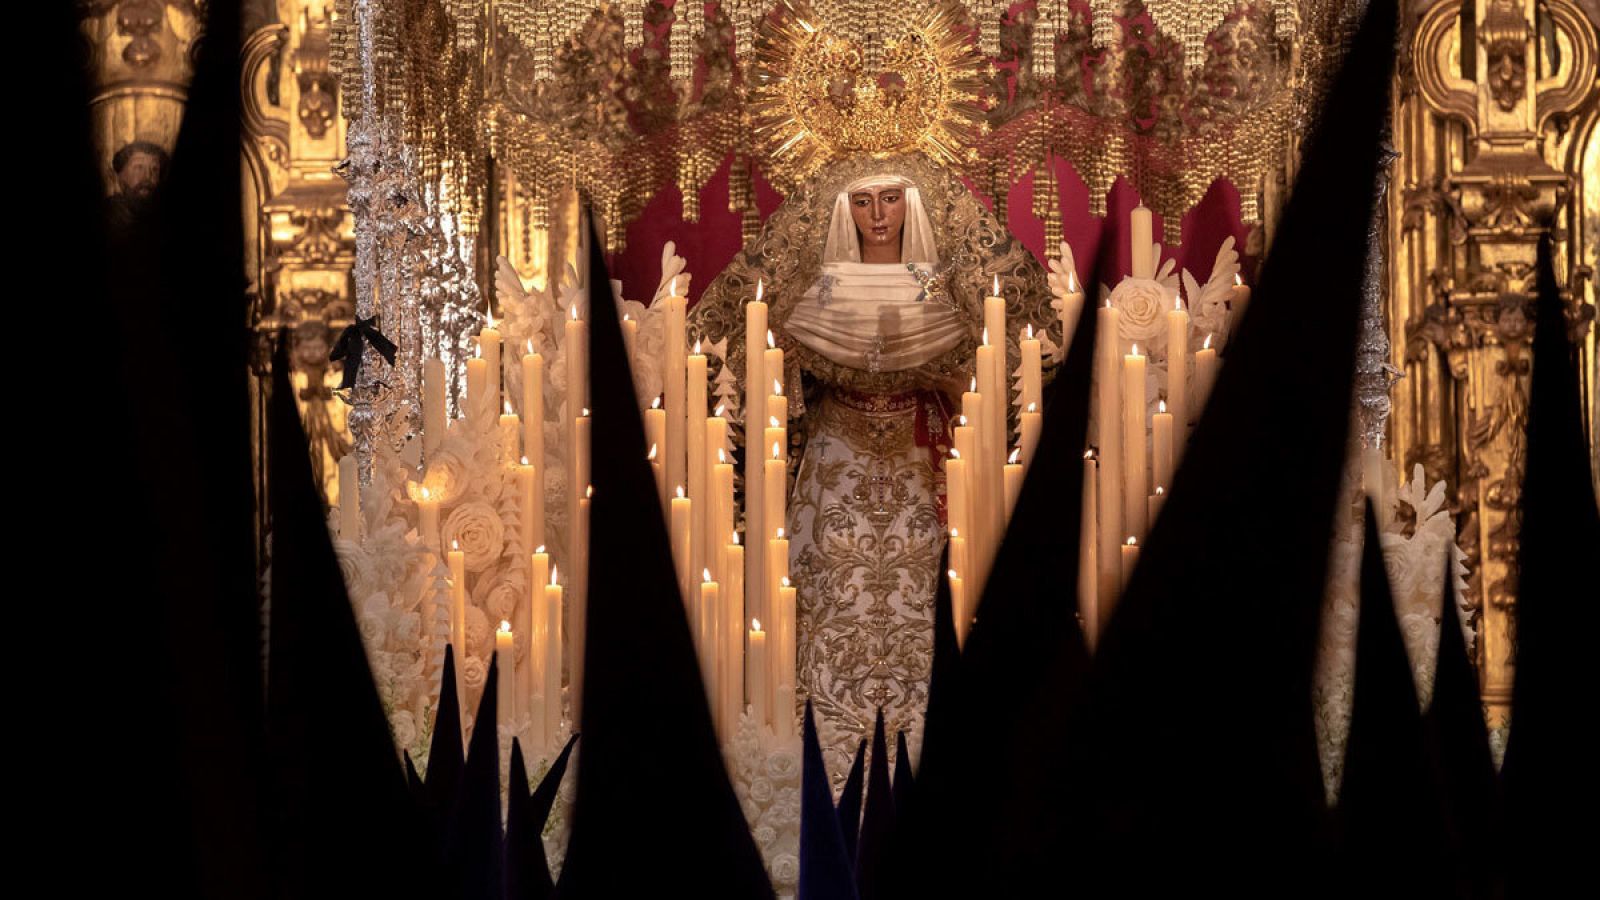 El paso de la Virgen de Nuestra Señora de la Esperanza durante su recorrido procesional en la Madrugá de Sevilla 2019.